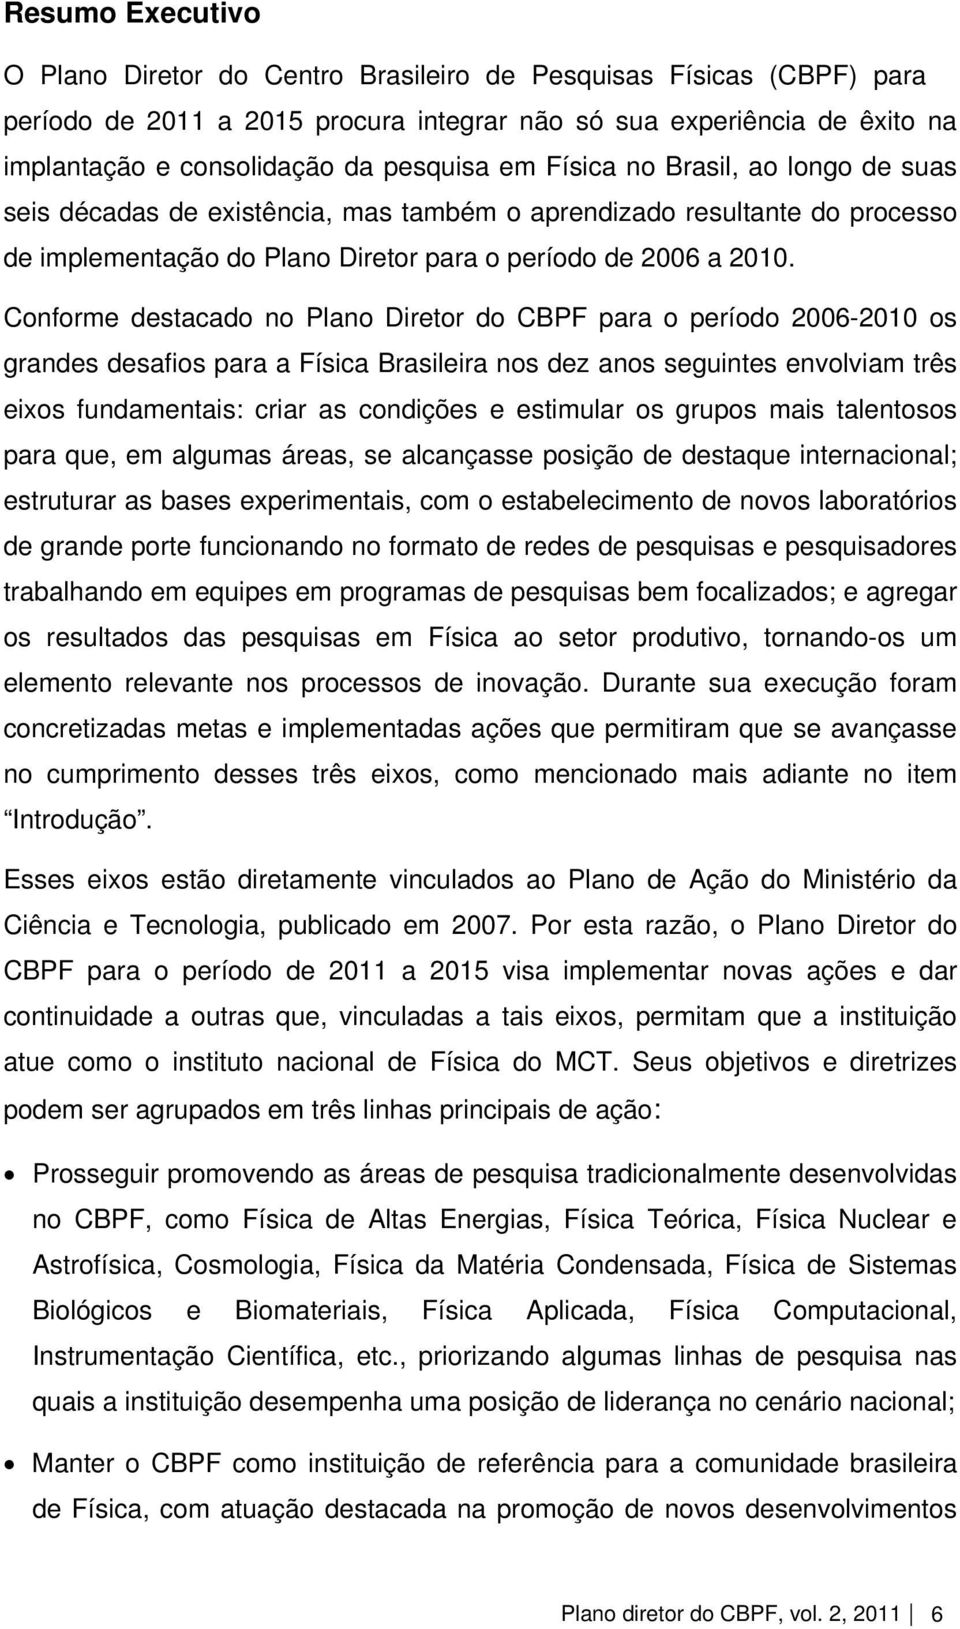 Conforme destacado no Plano Diretor do CBPF para o período 2006-2010 os grandes desafios para a Física Brasileira nos dez anos seguintes envolviam três eixos fundamentais: criar as condições e